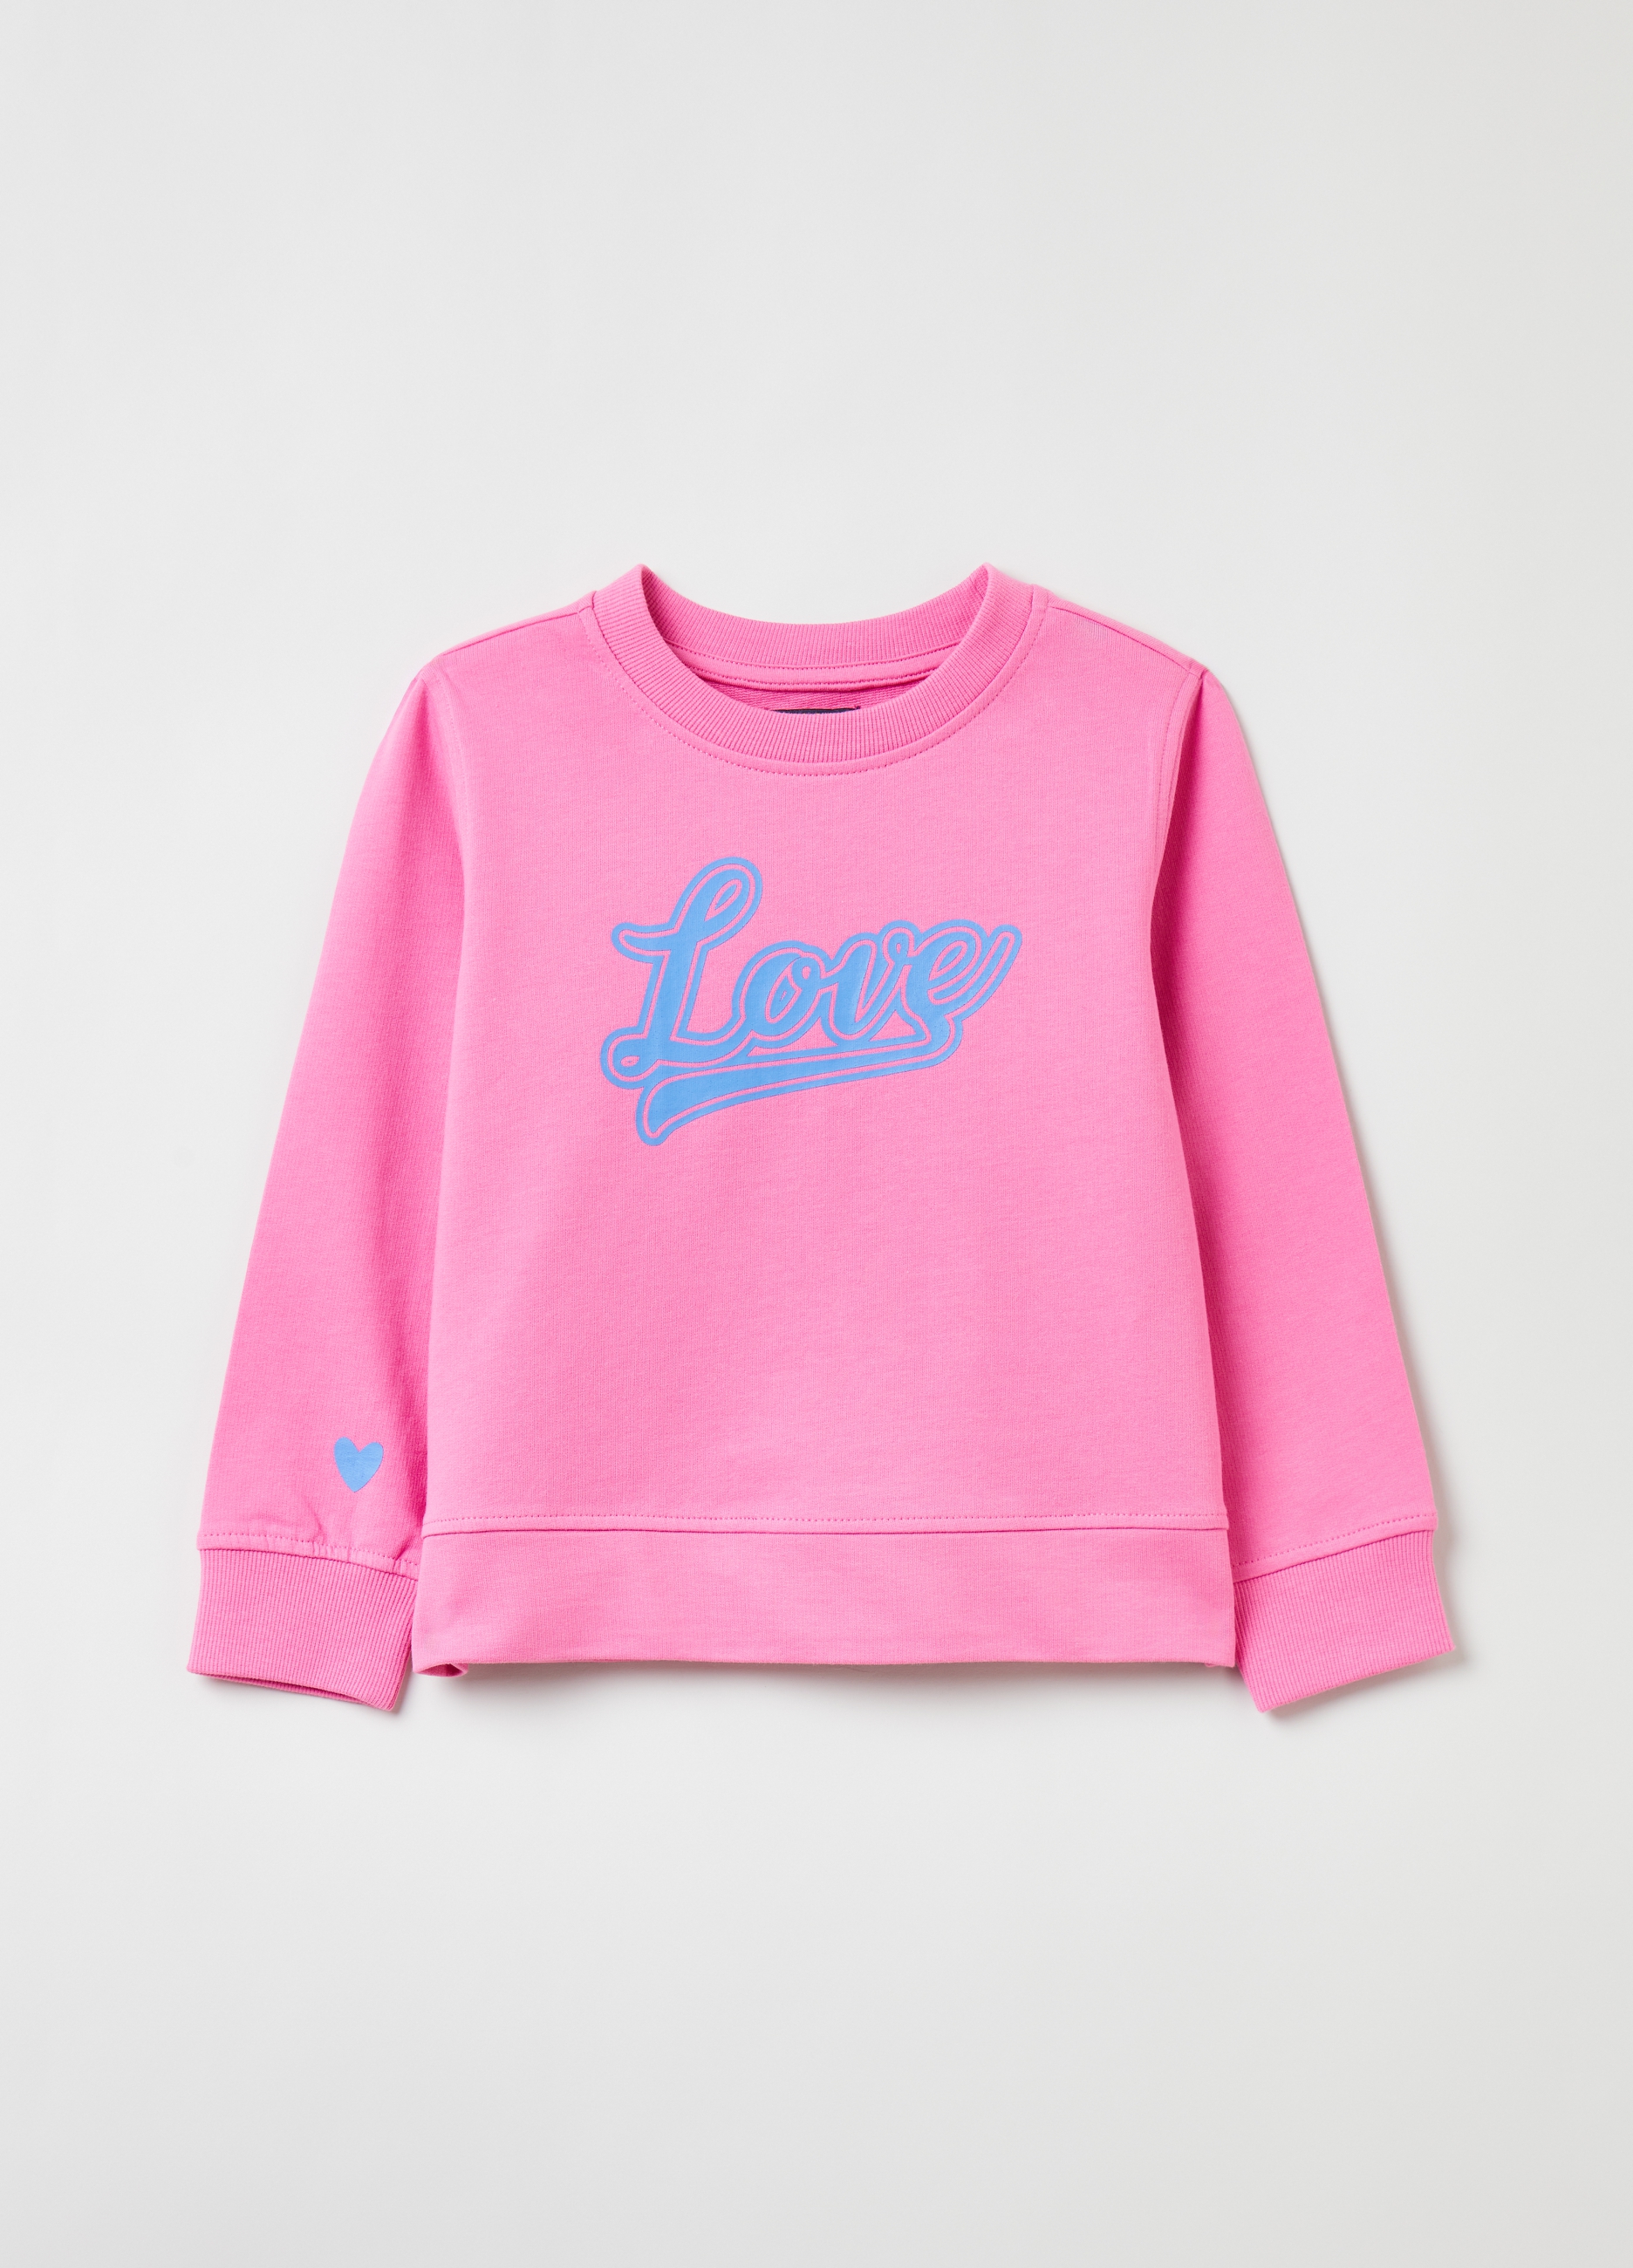 Фуфайка OVS для девочек, розовая, 3-4 лет, 1843535 комплект трикотажный для девочек фуфайка футболка юбка шорты